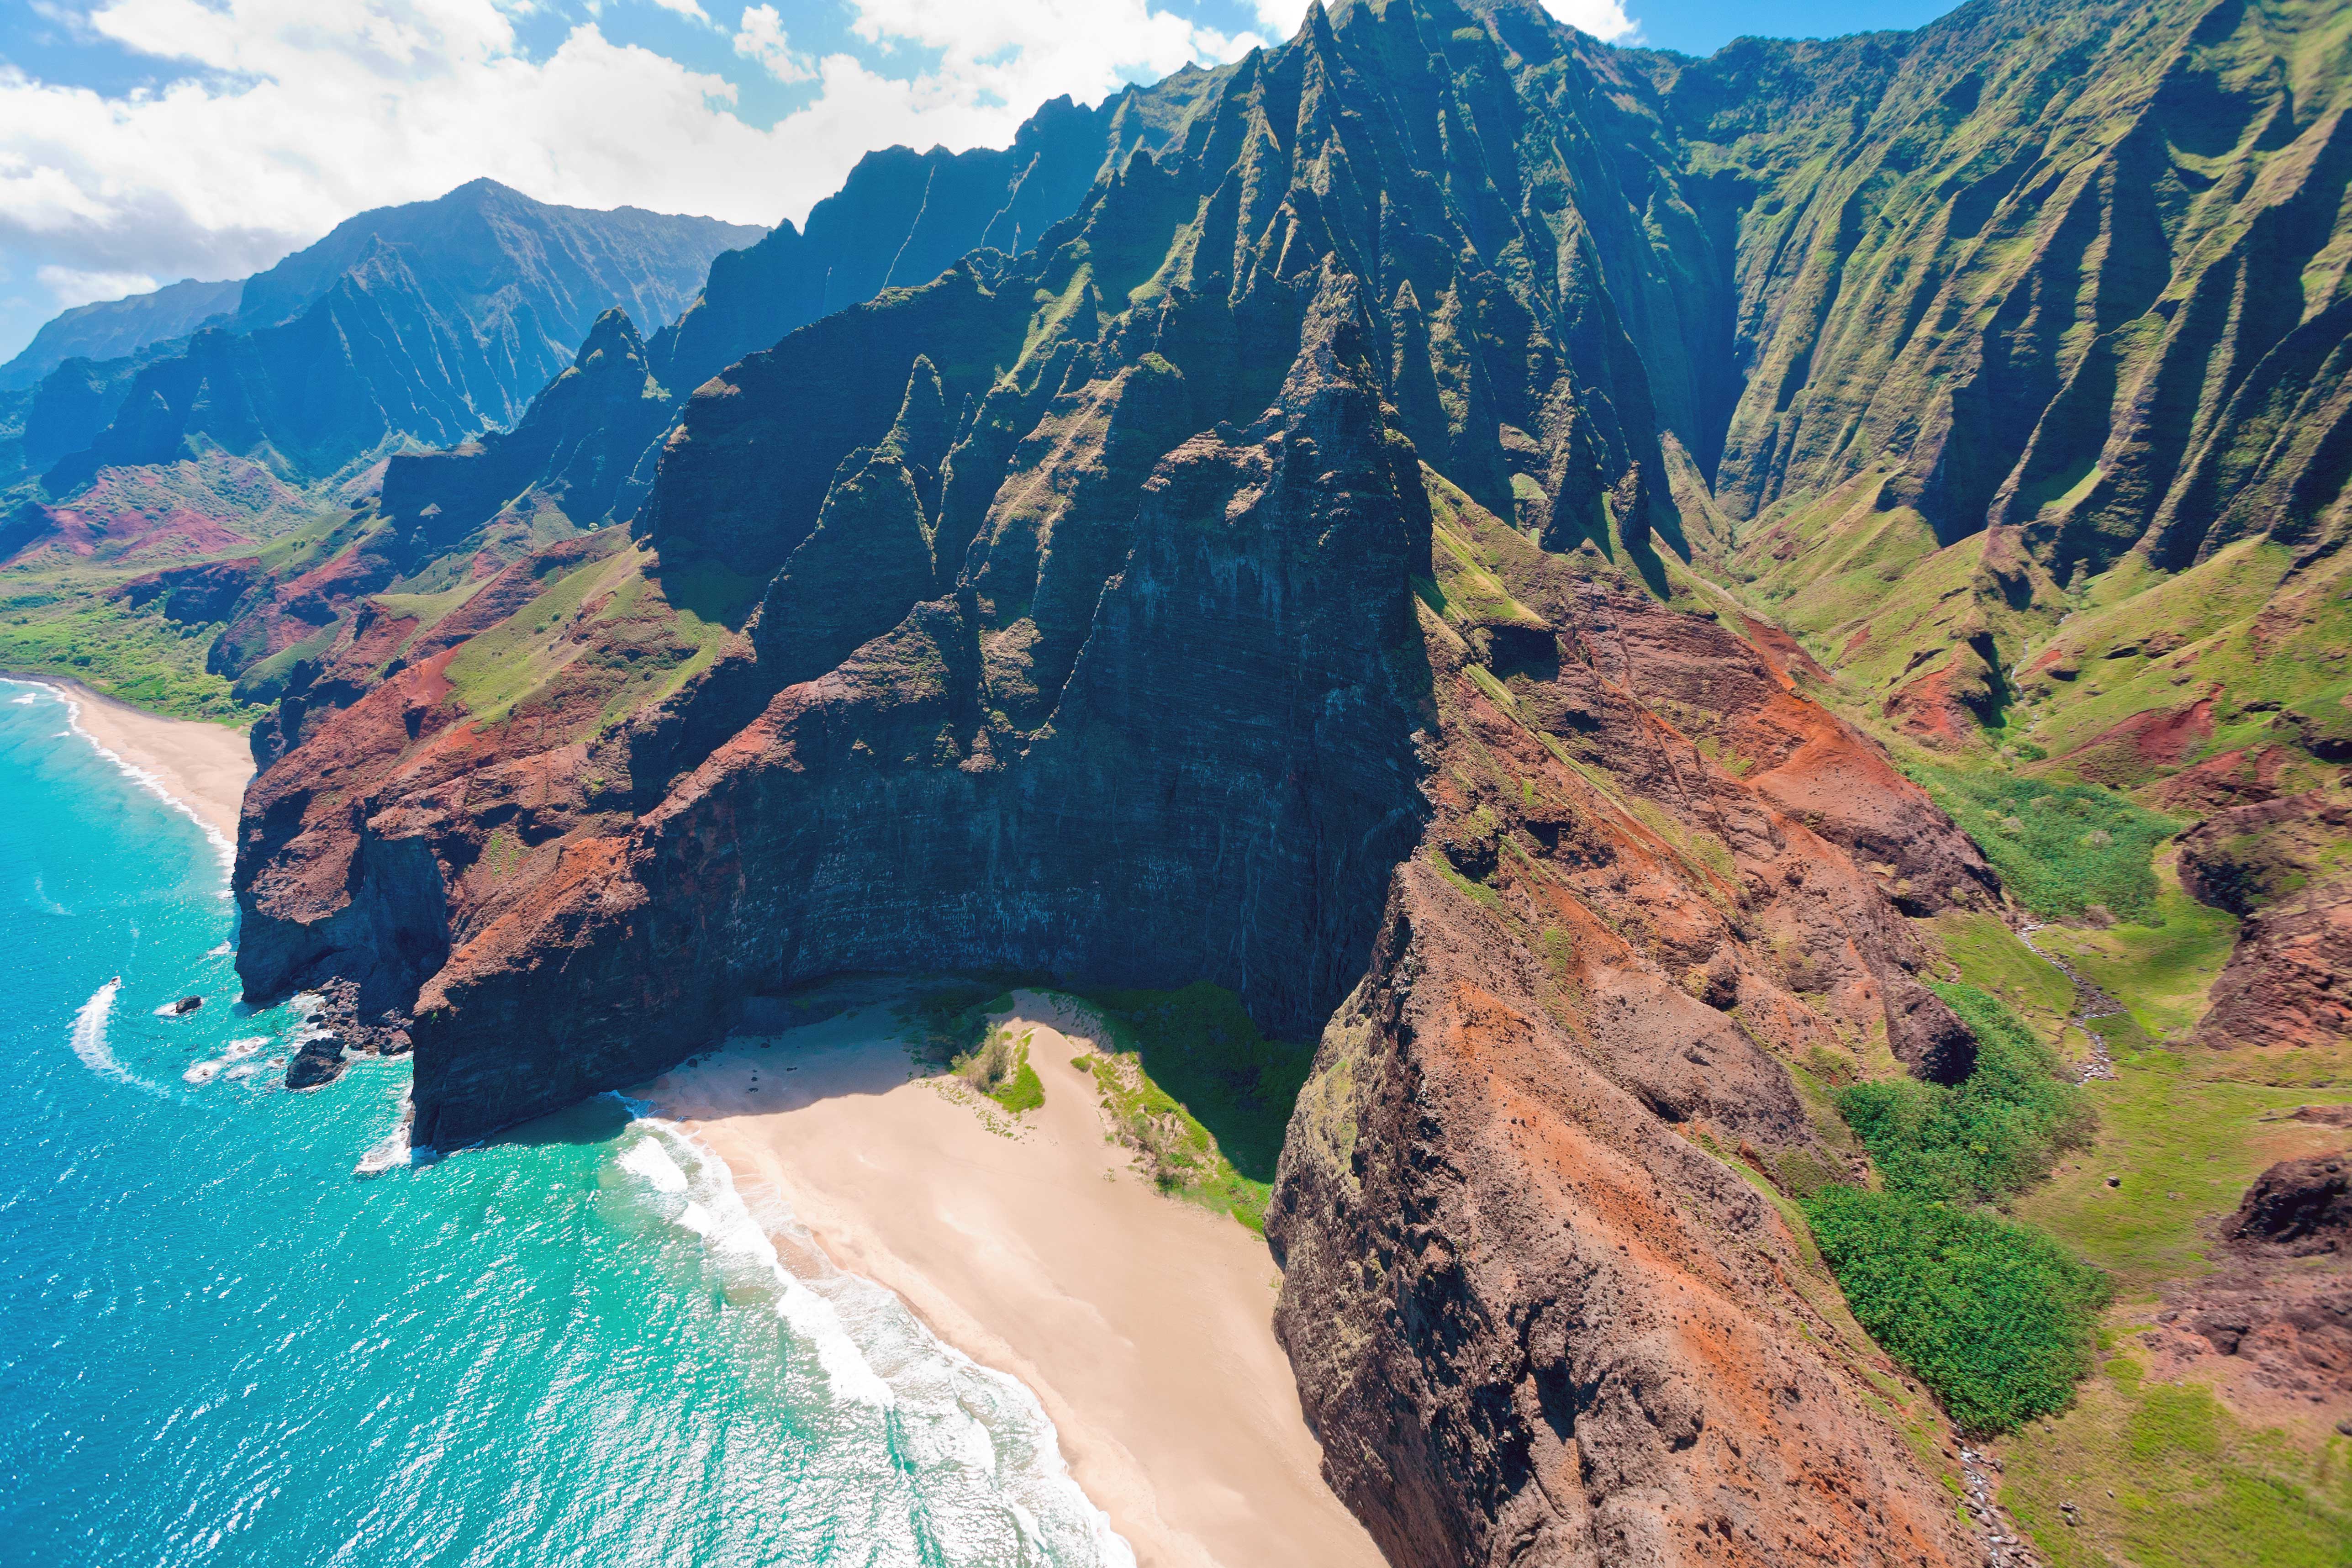 I 10 posti alle Hawaii dove ammirare l'alba più bella